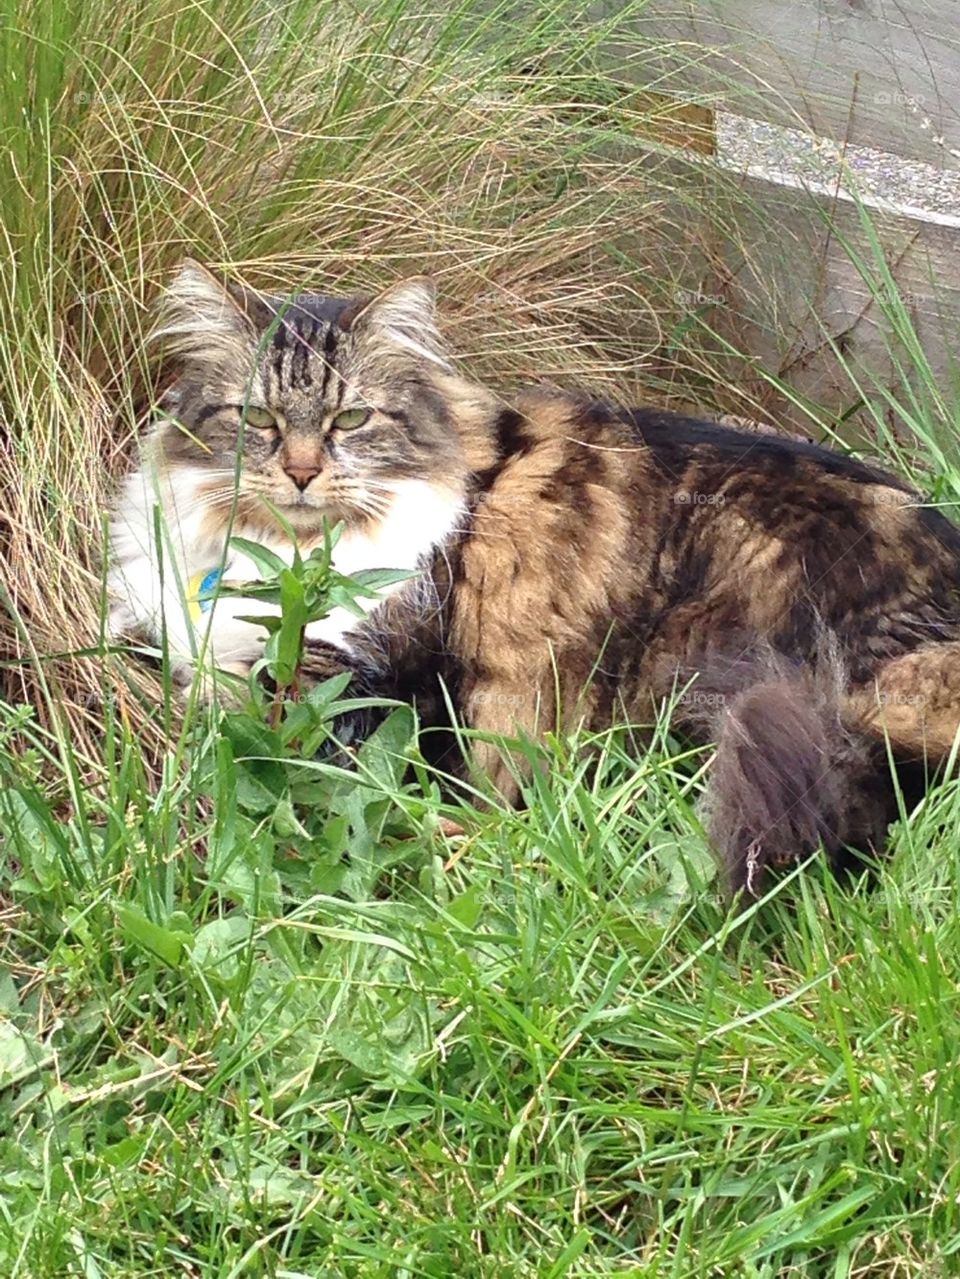 Wild cat in grass